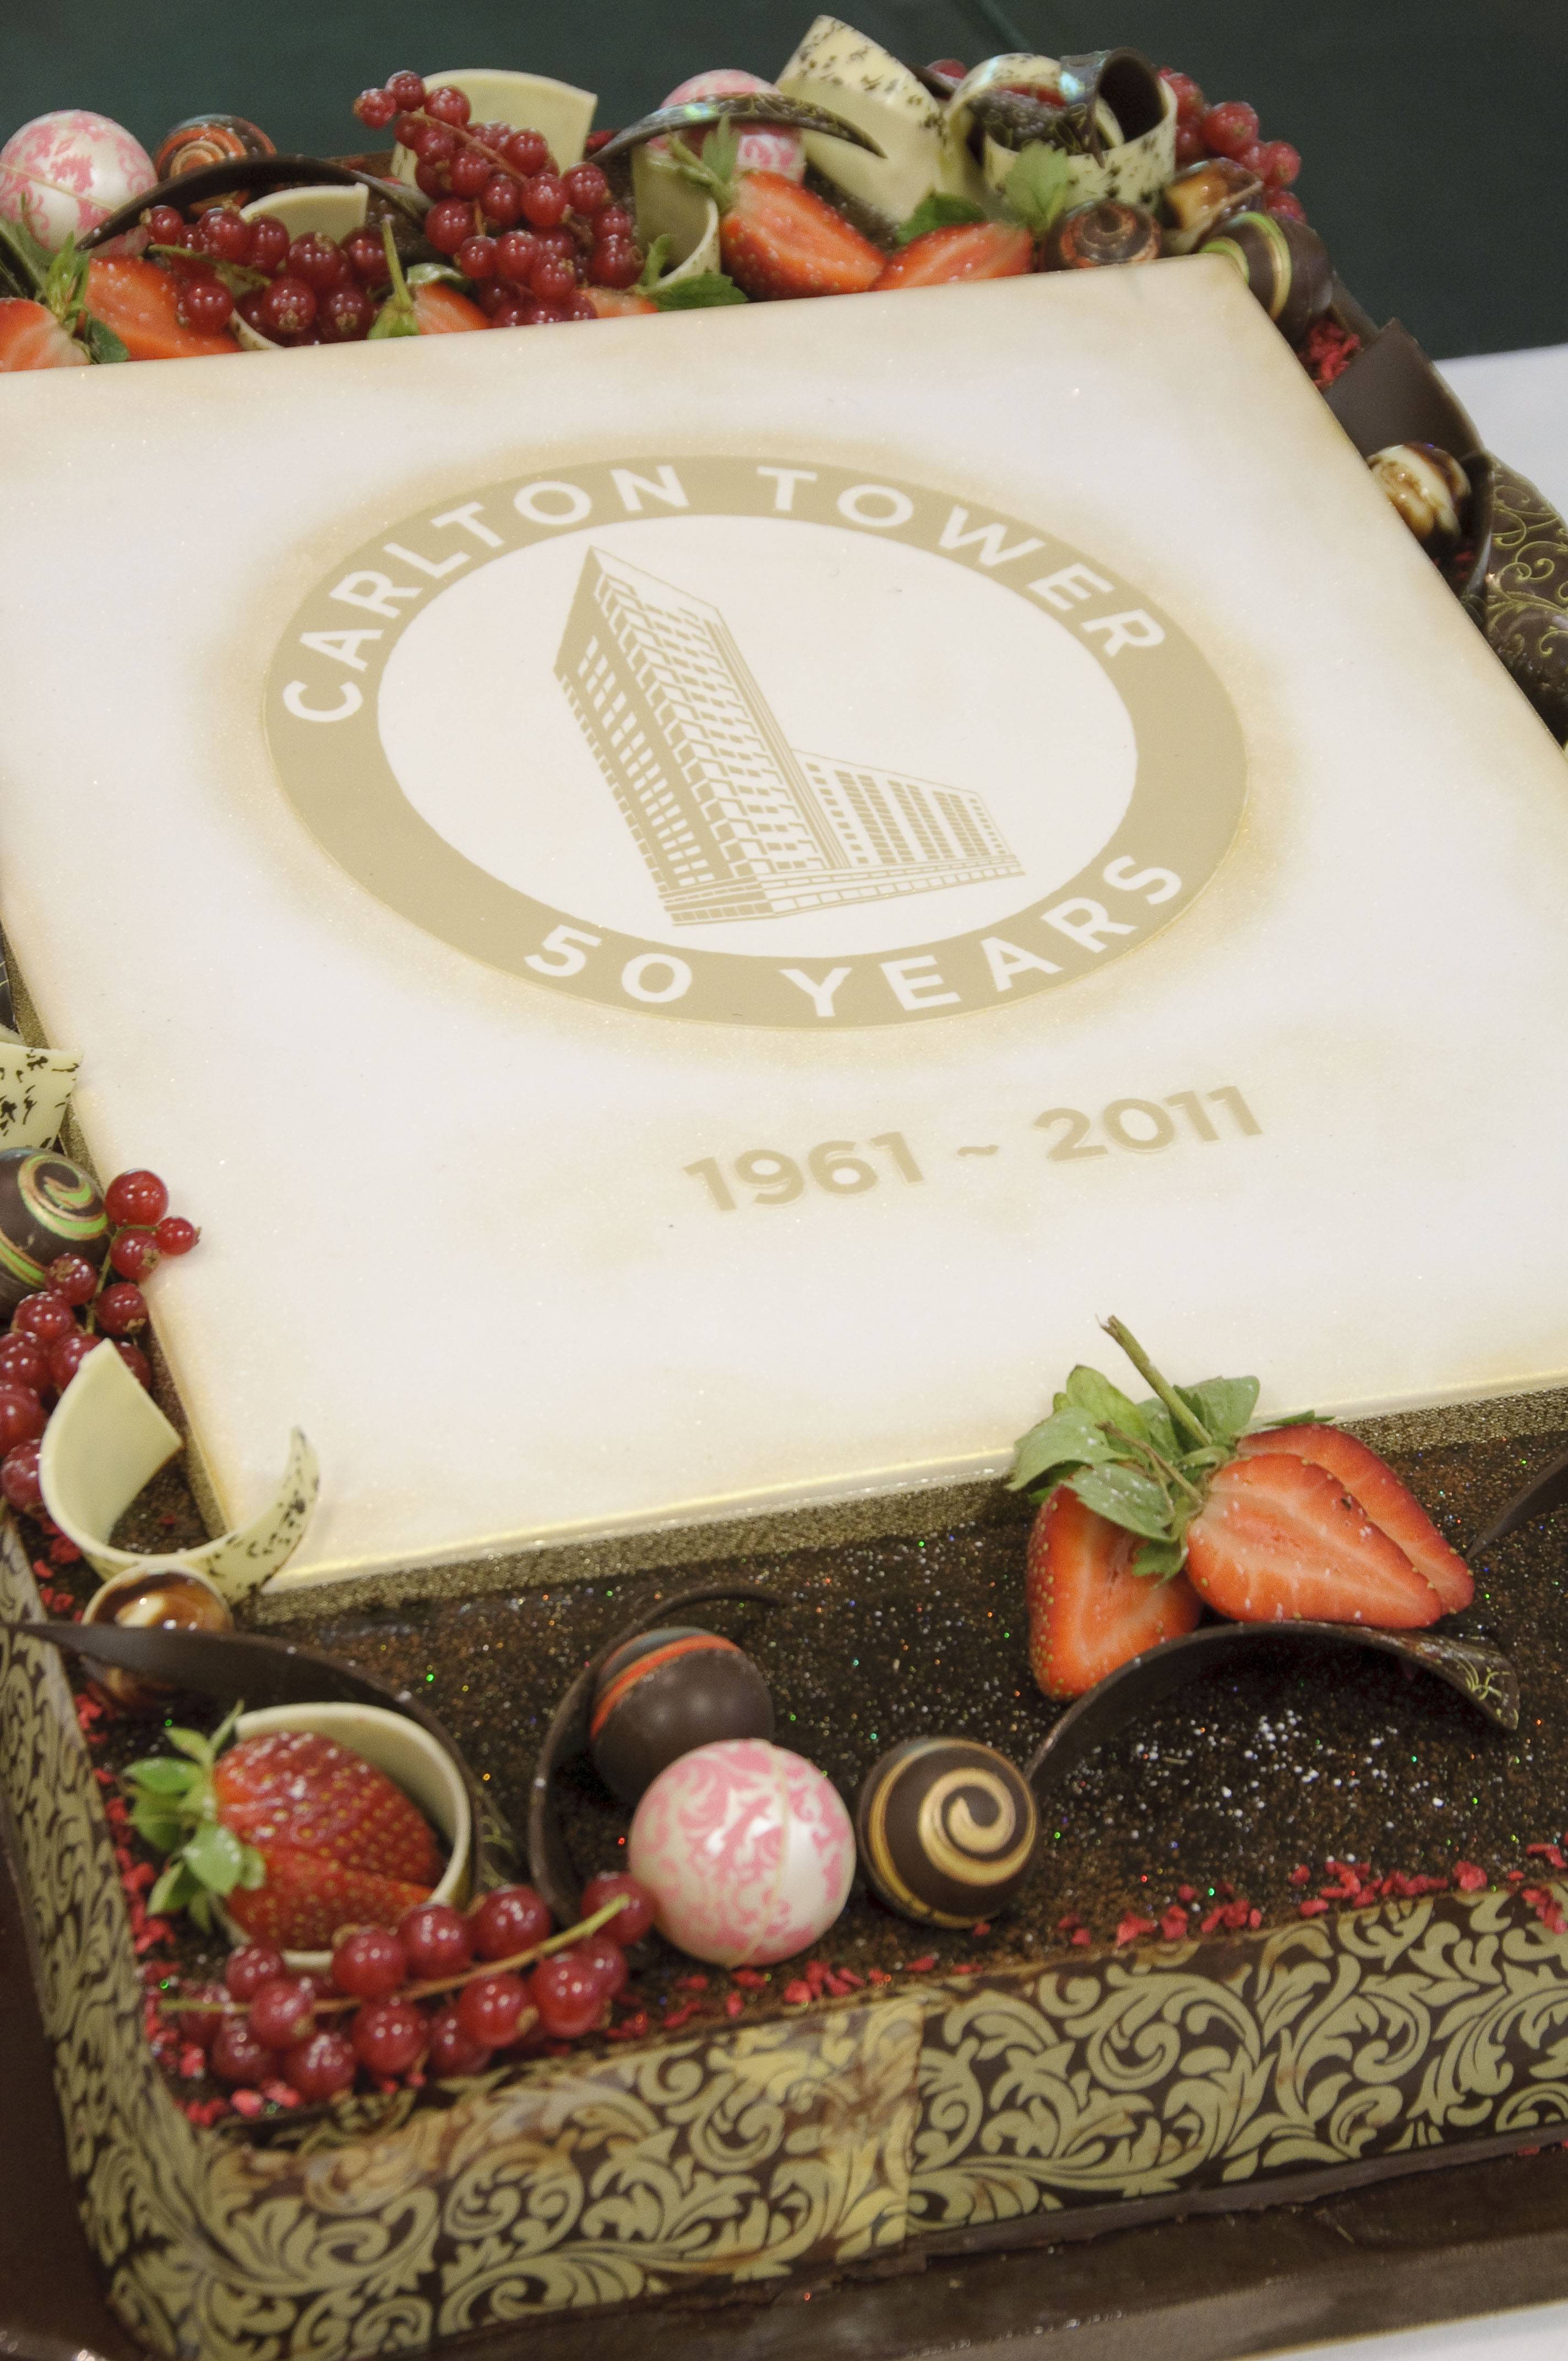 Jumeirah Carlton Tower 50th birthday